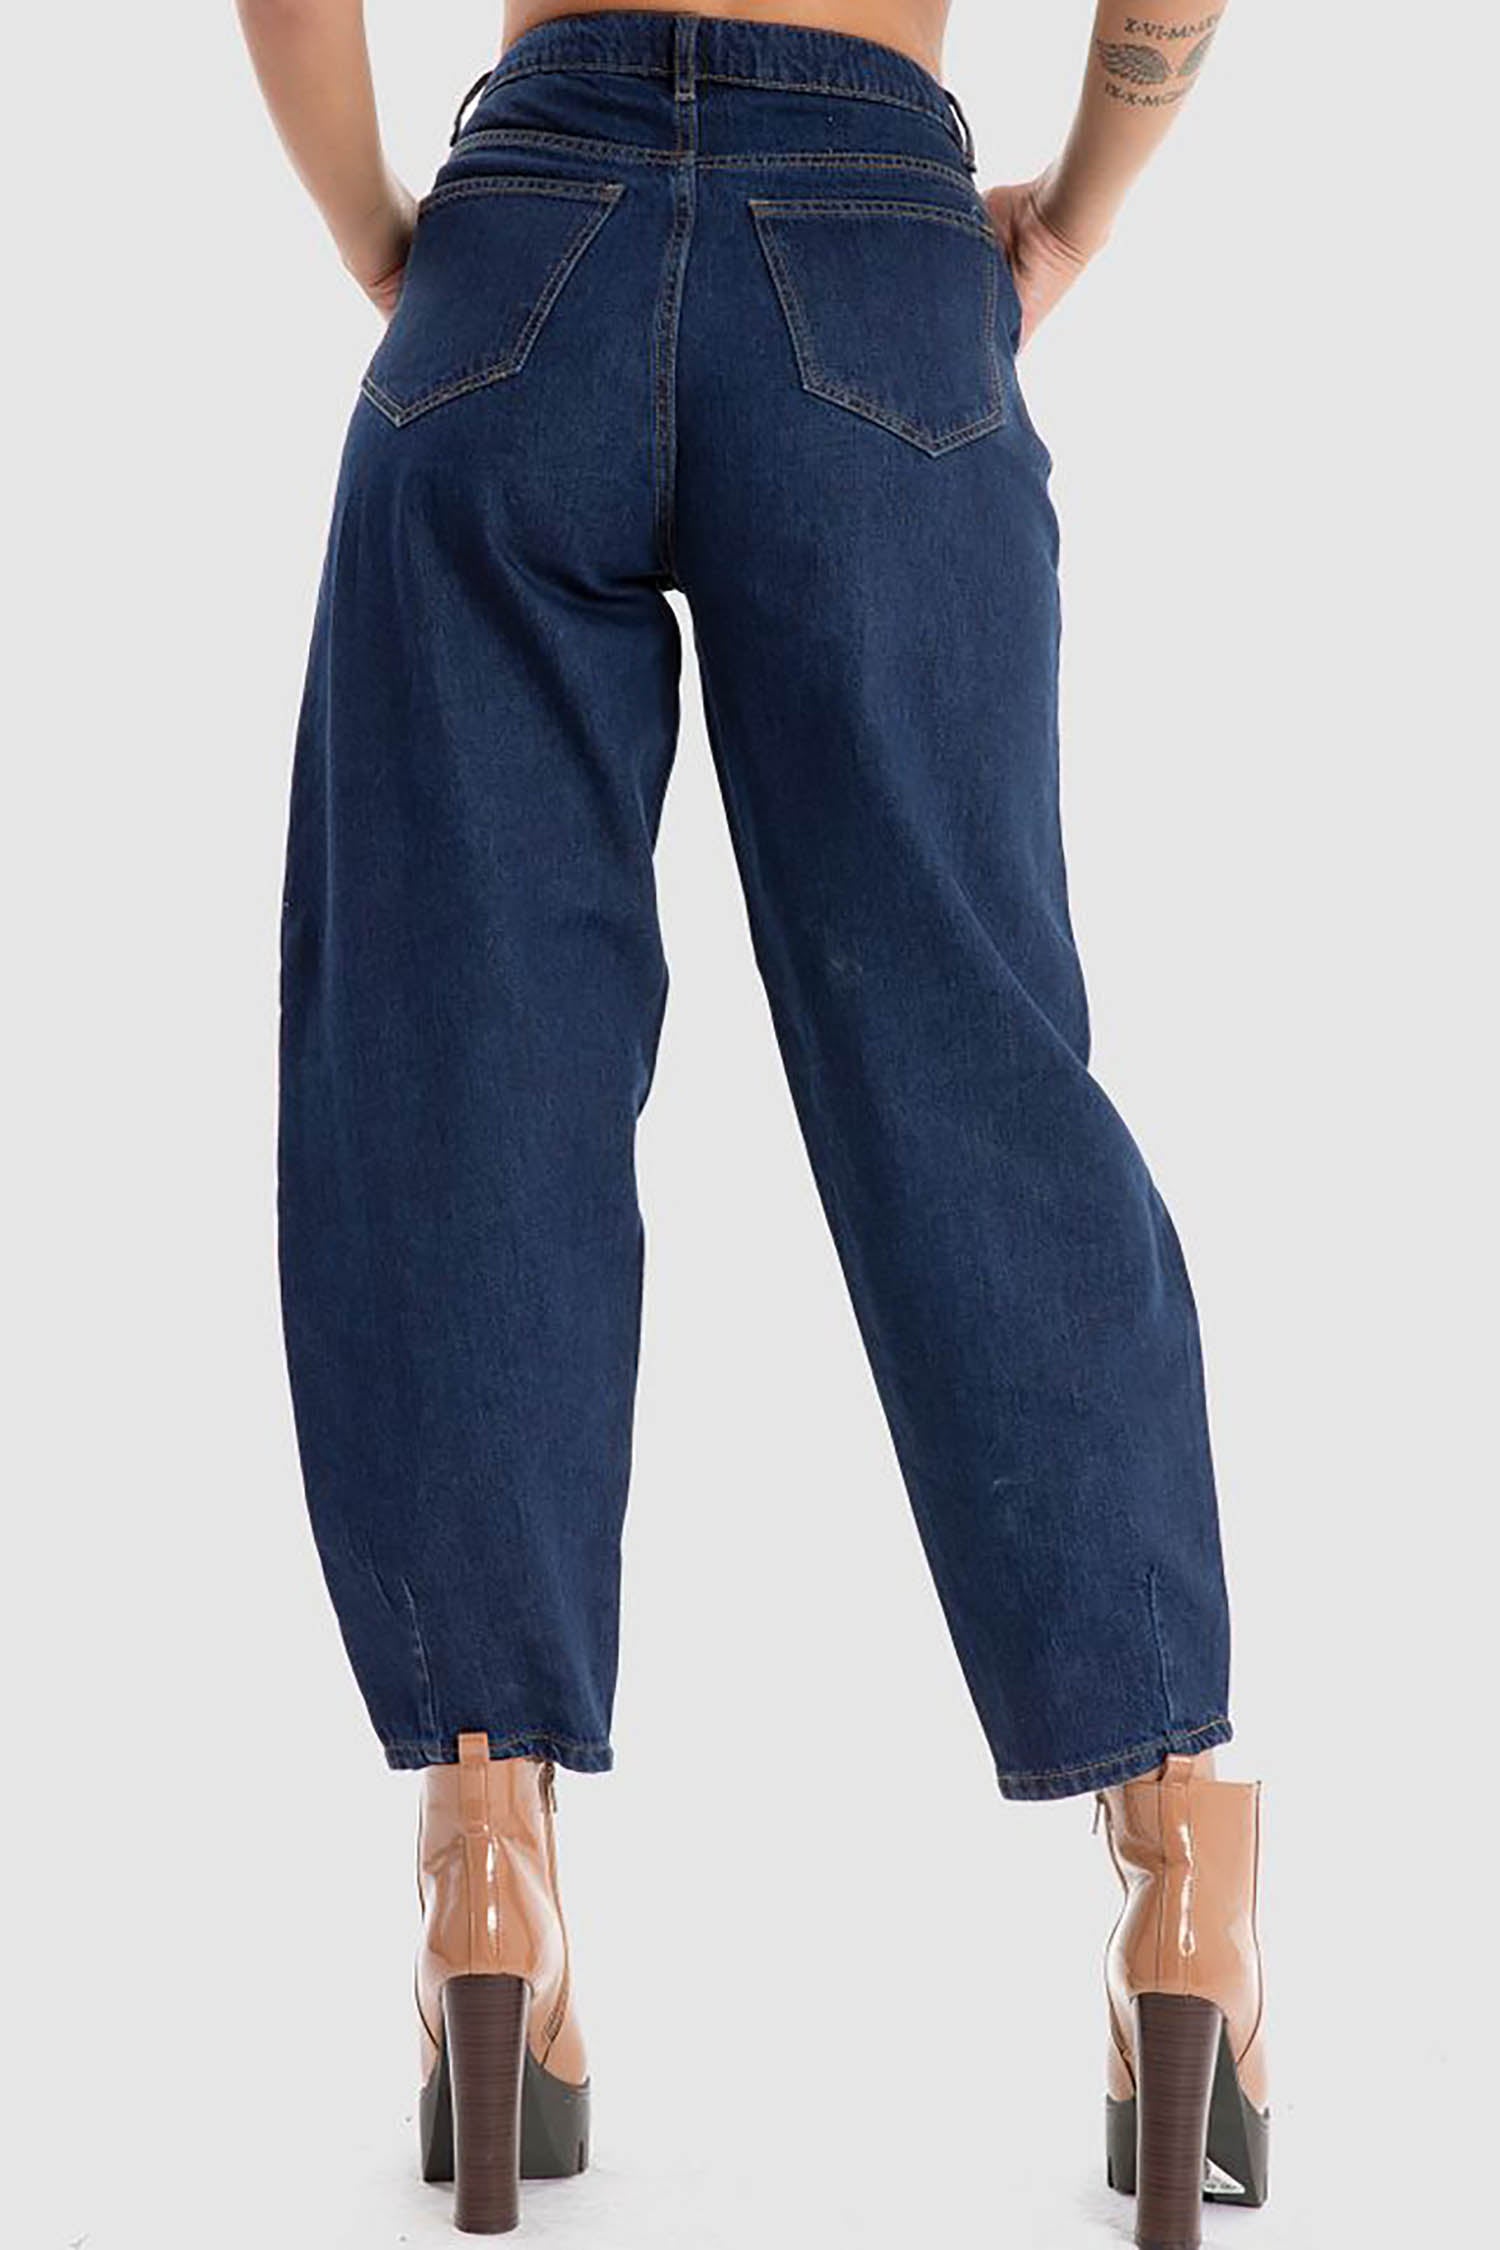 Kava Women Boy Friend Jeans (4047)